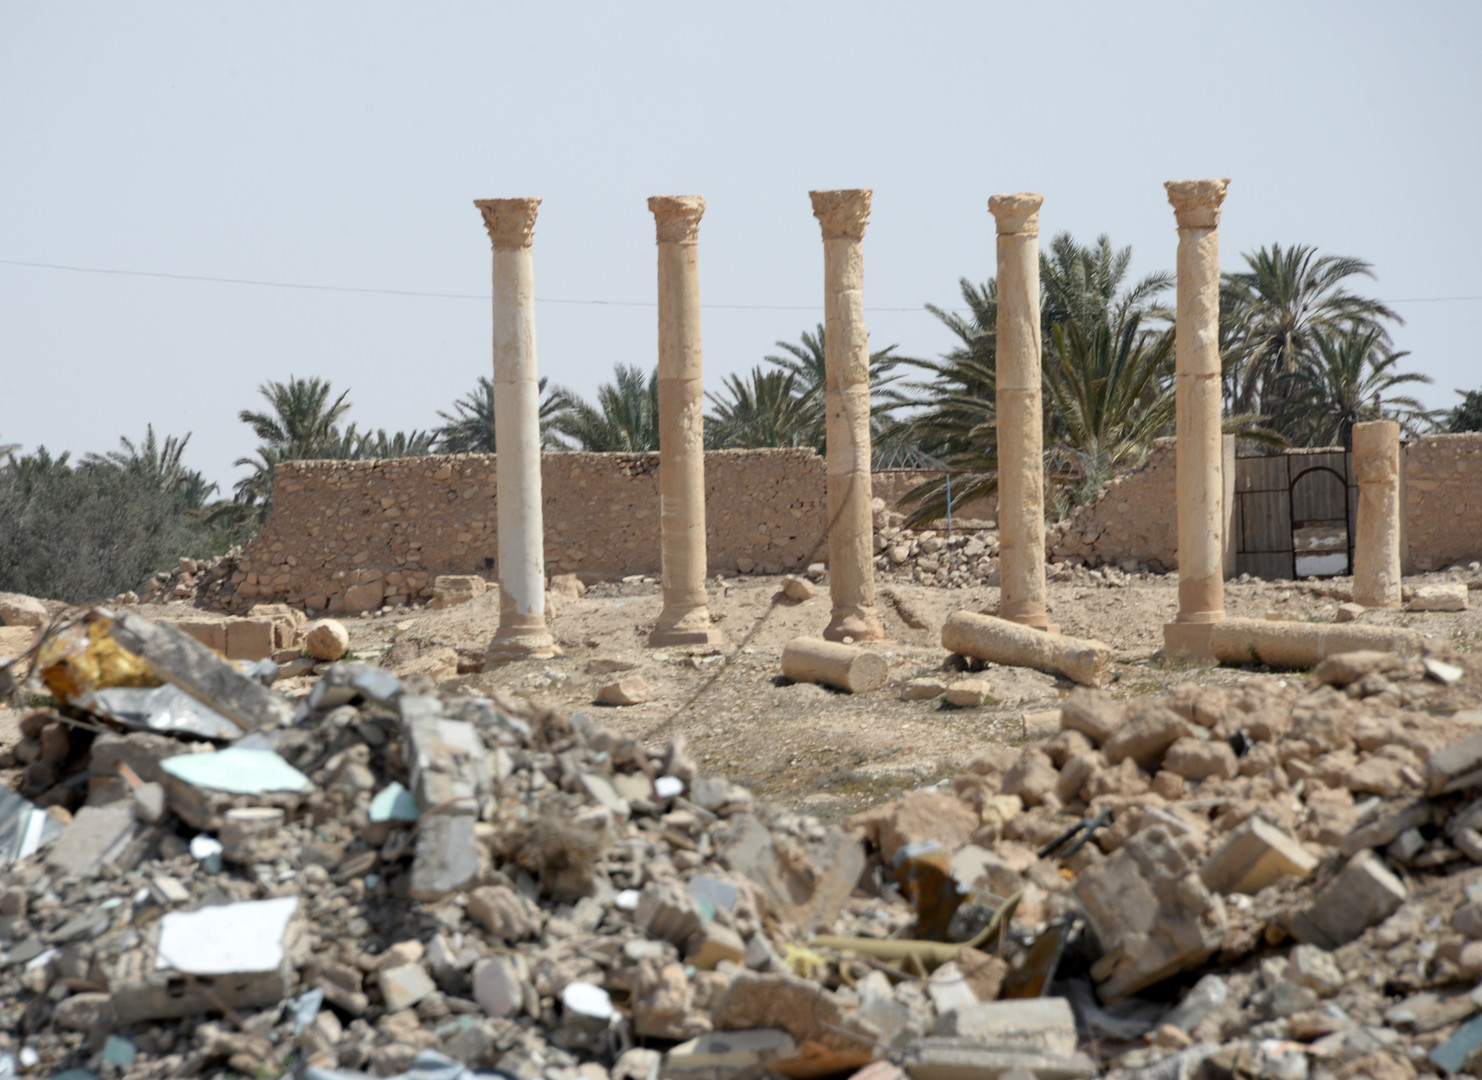 Palmyre : les premières images de la cité antique arrachée à Daesh (PHOTOS, VIDEO)